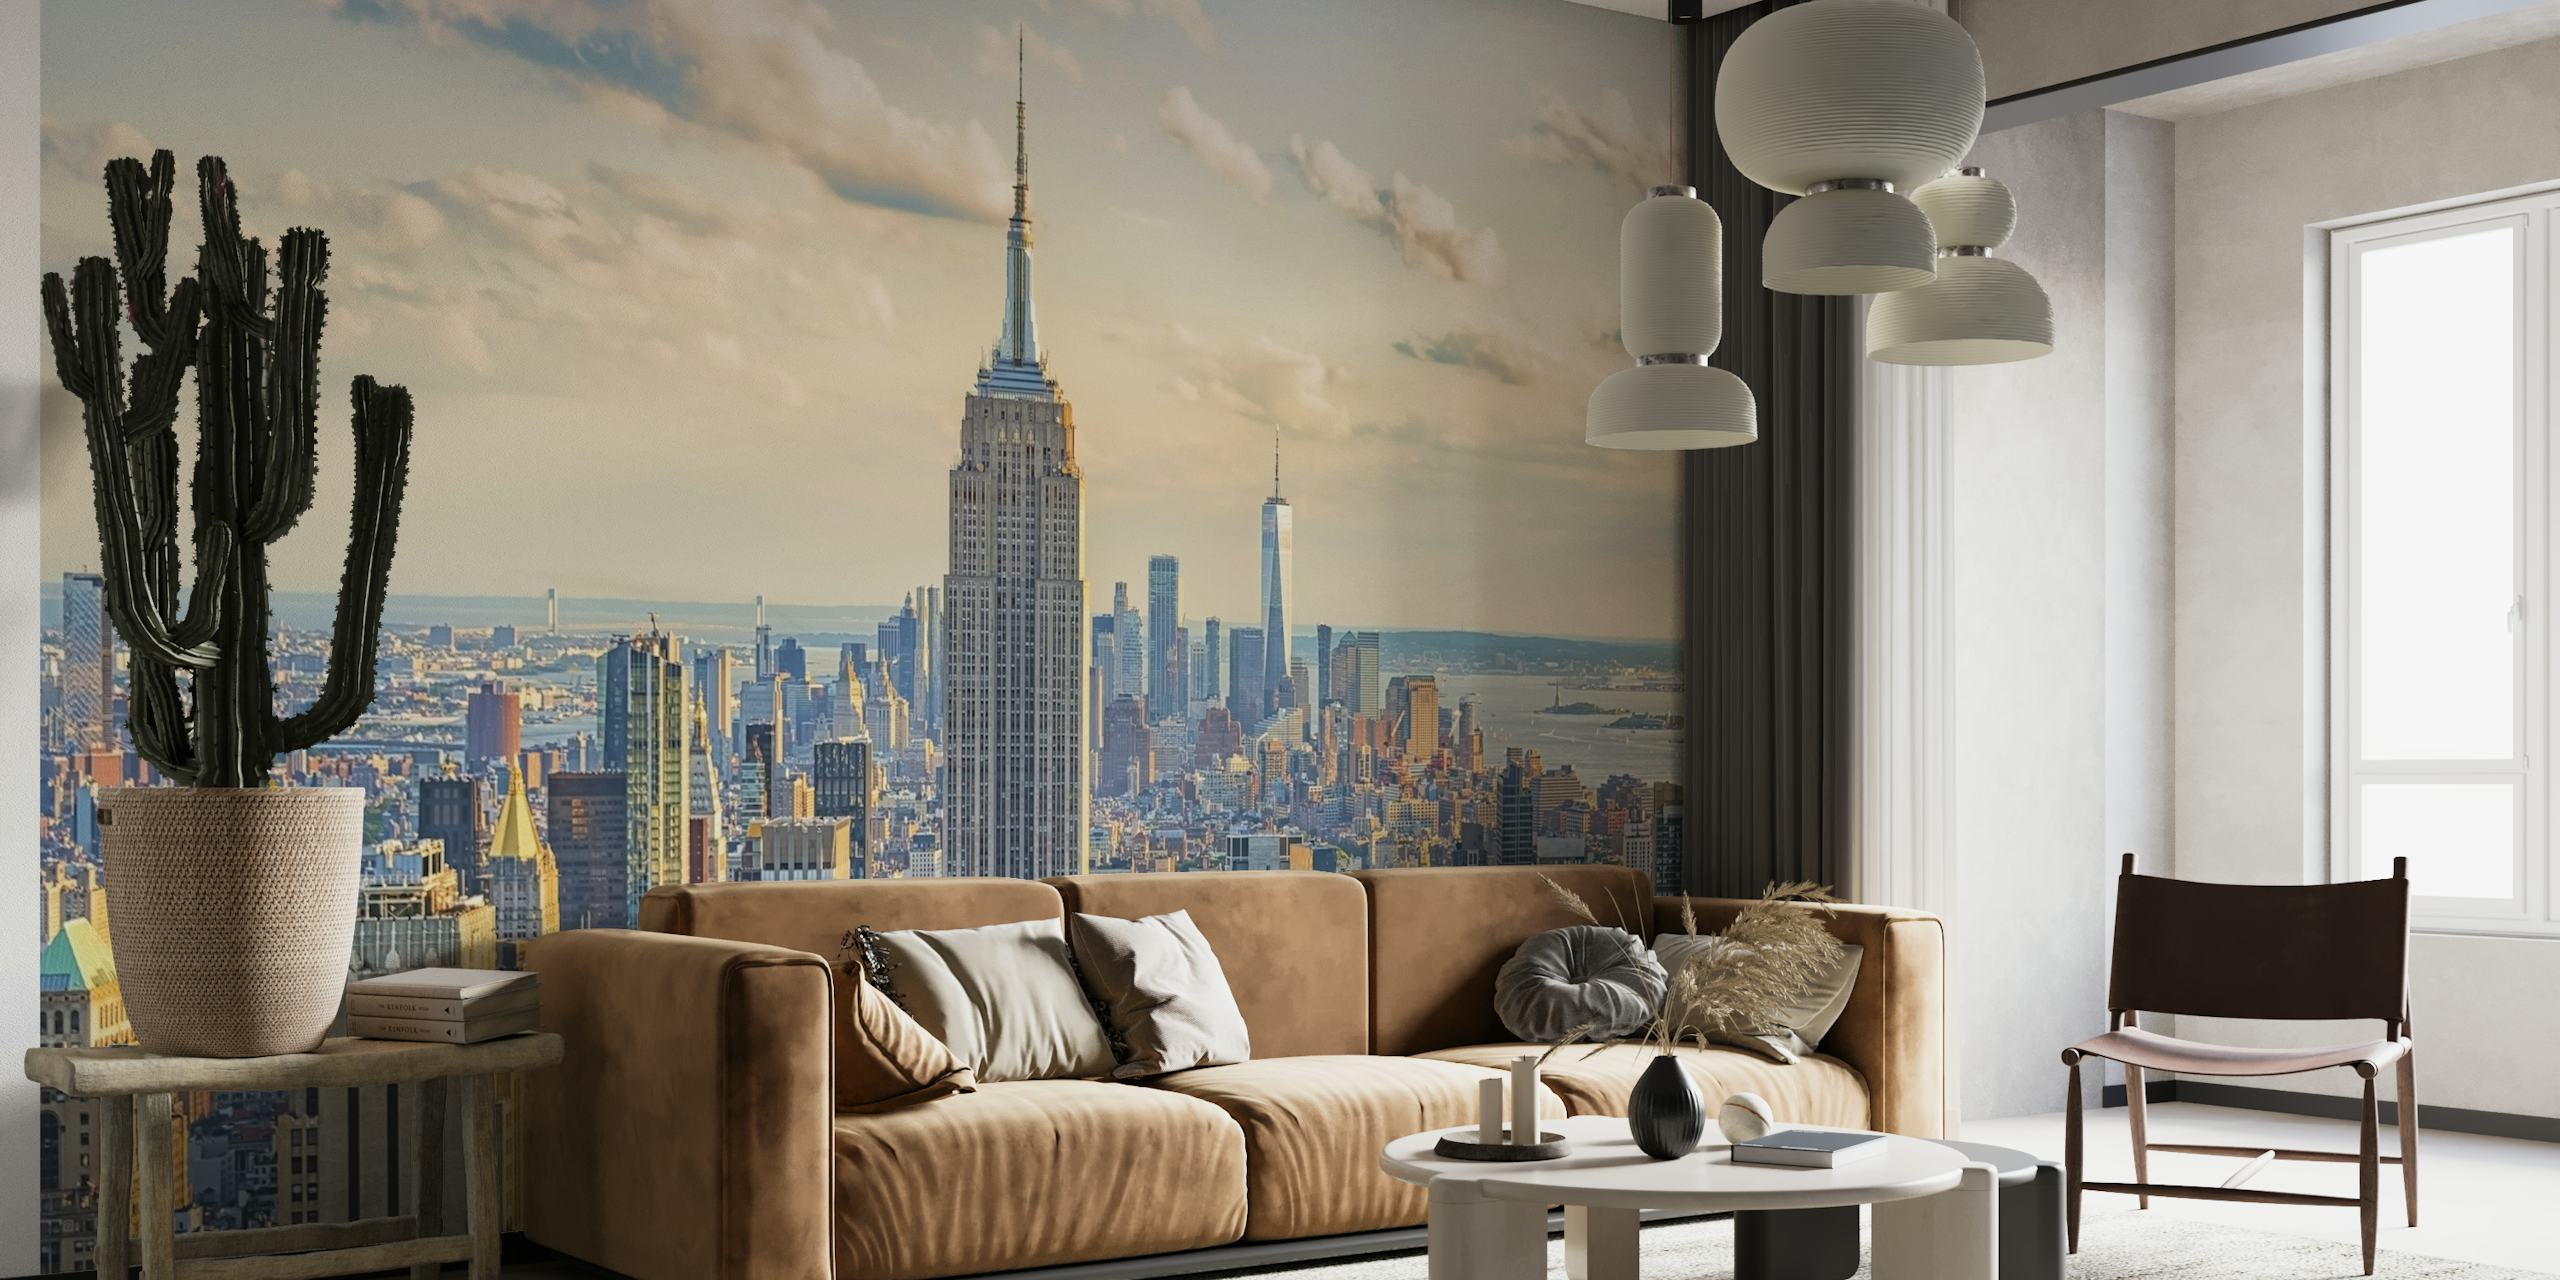 Fototapete Empire State Building mit Skyline von New York City